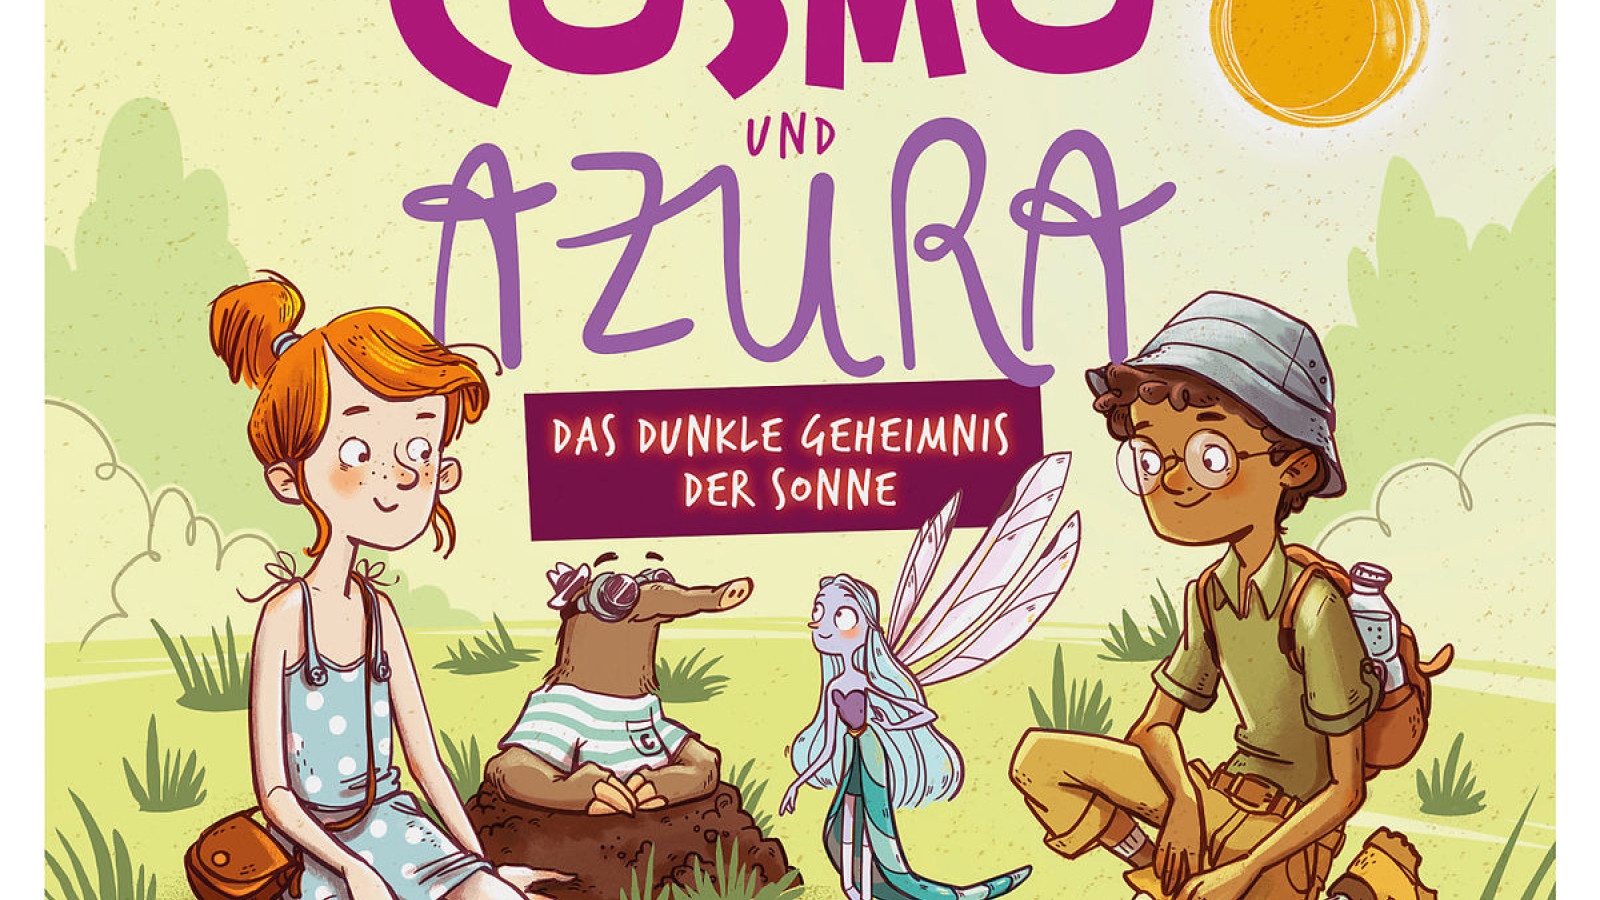 Cosmo und Azura - Das sonnige Musik-Hörspiel 